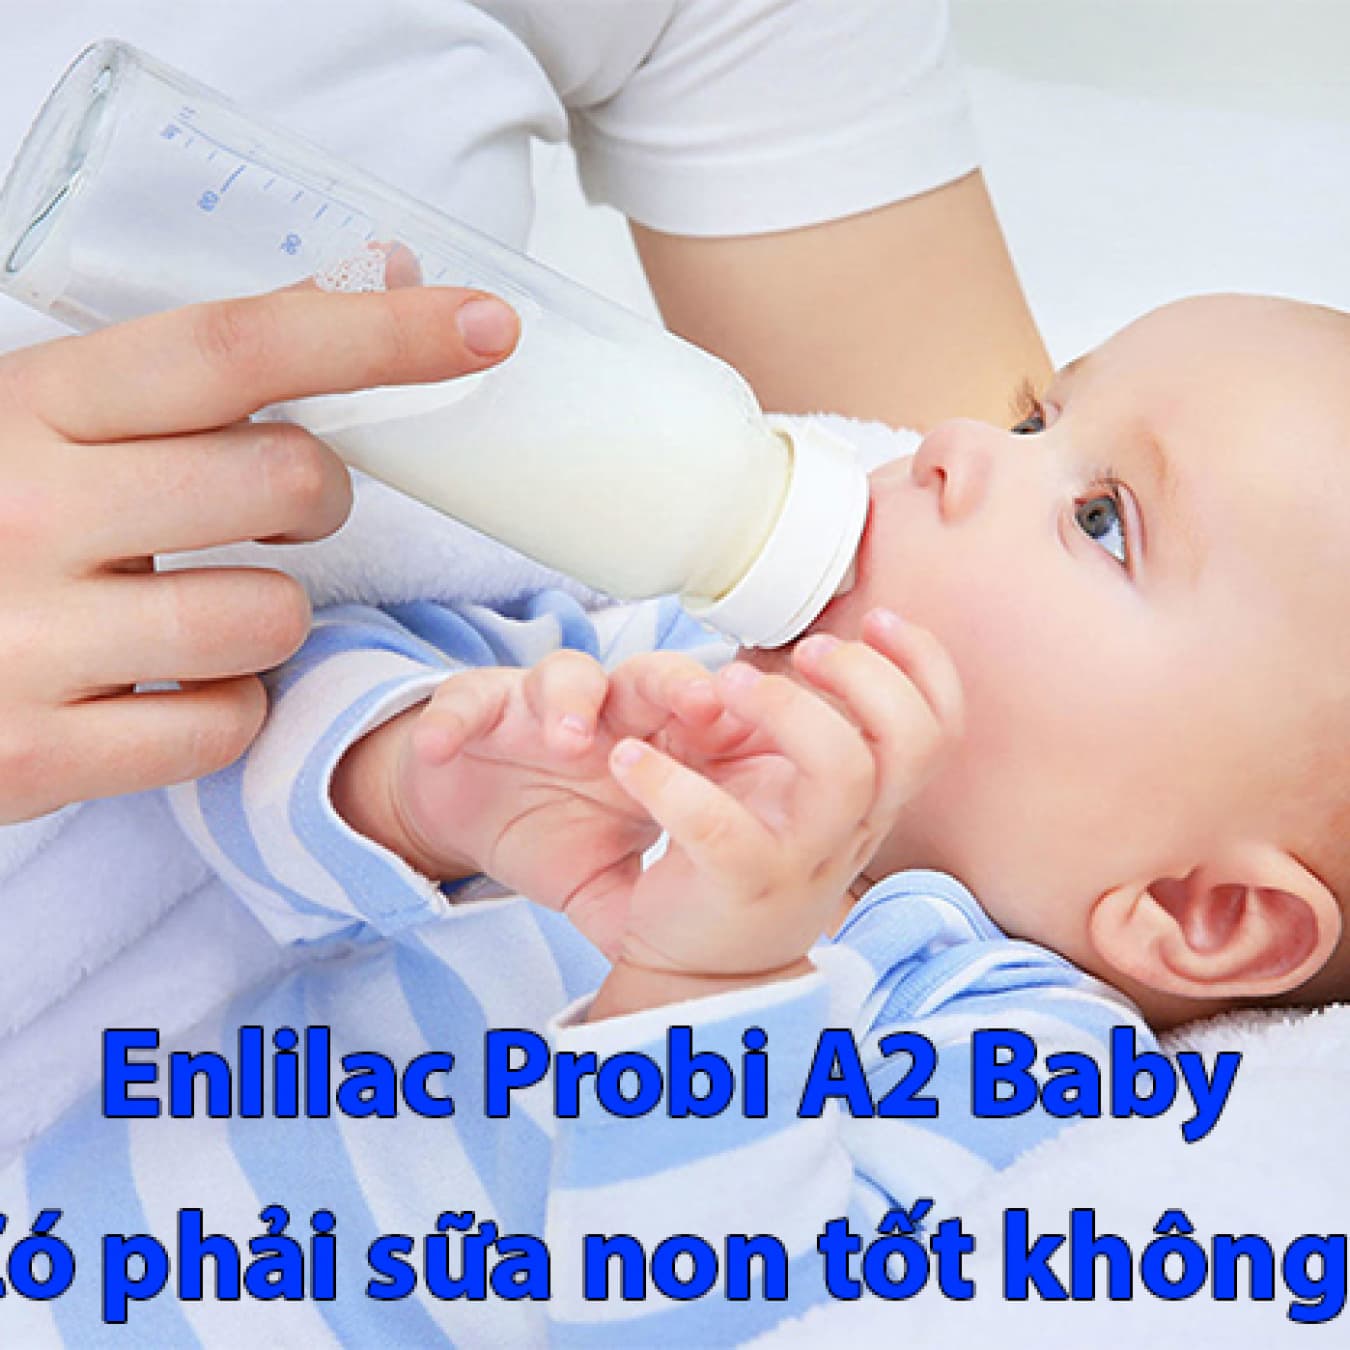 Enlilac A2 baby - Sữa non tốt cho trẻ sơ sinh khi mẹ chưa có sữa